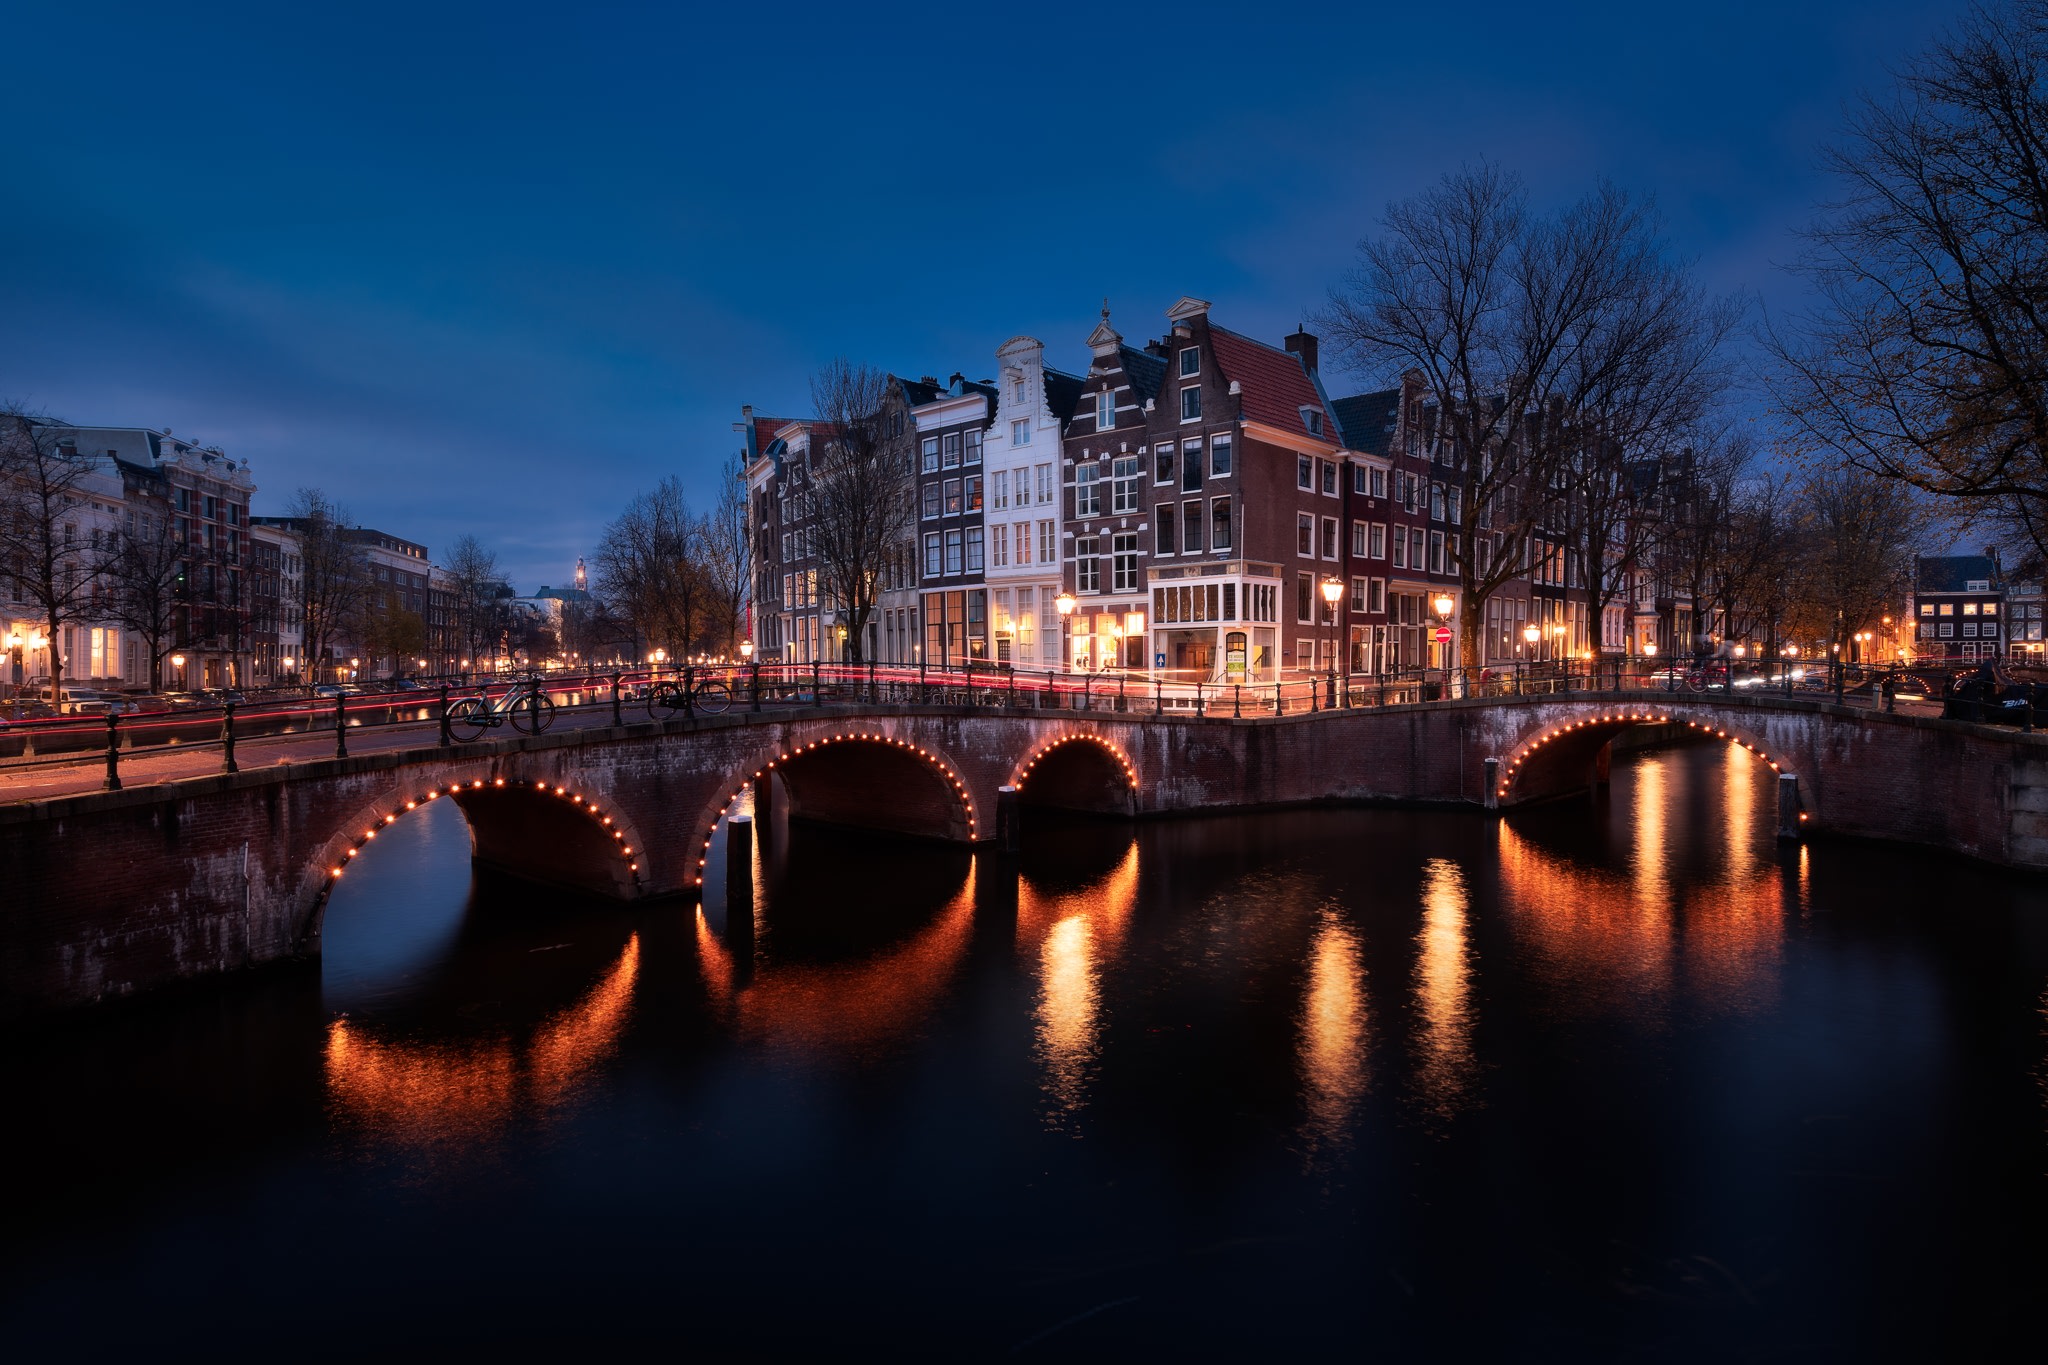 Canaux à l'heure bleue, pendant un week-end Amsterdam